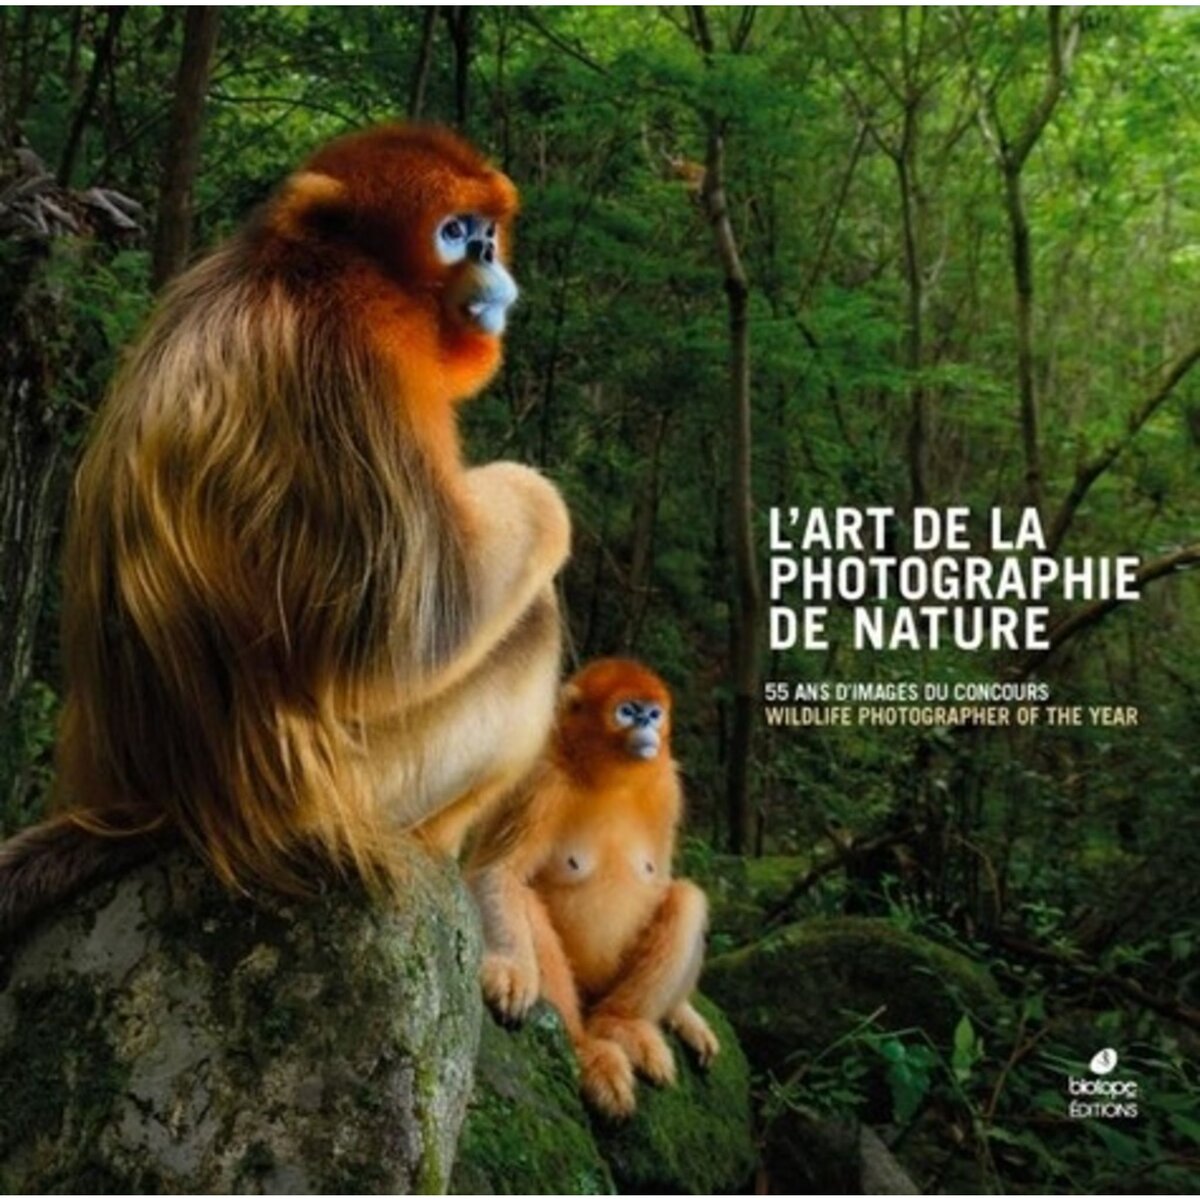  L'ART DE LA PHOTOGRAPHIE DE NATURE. 55 ANS D'IMAGES DU CONCOURS WILDLIFE PHOTOGRAPHER OF THE YEAR, Biotope